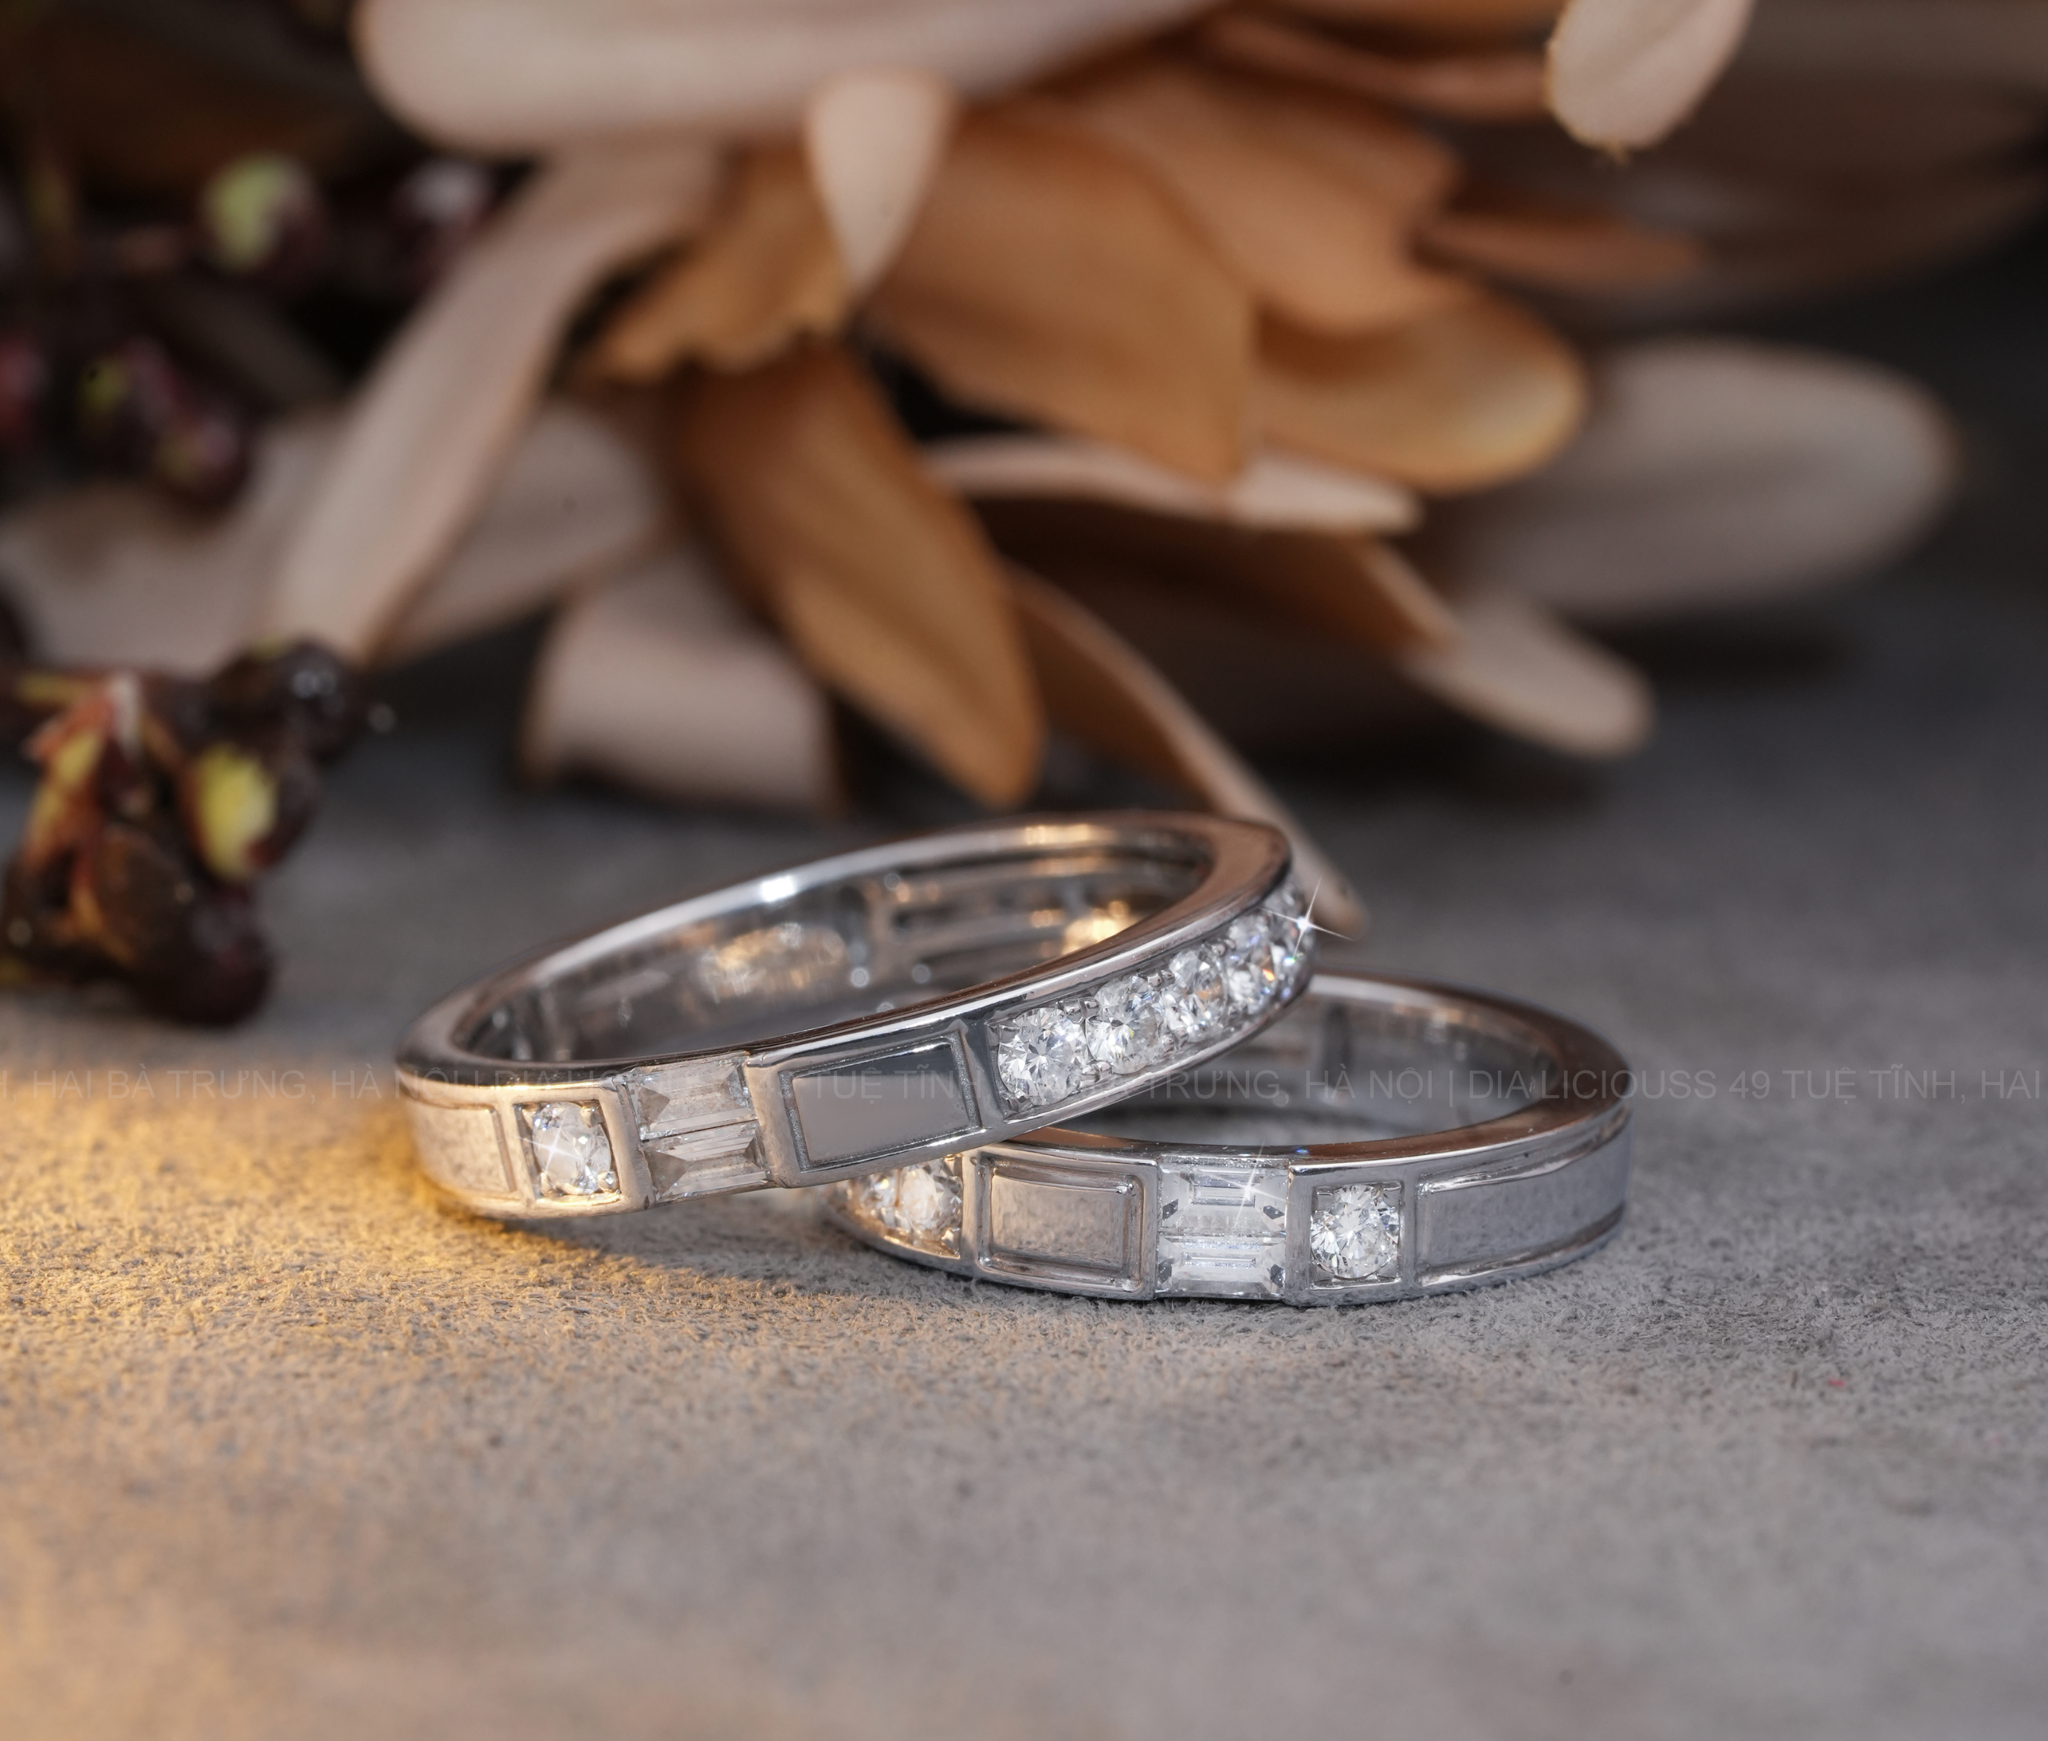 Những lưu ý quan trọng khi đeo nhẫn cưới - Bí quyết để giữ vẻ đẹp lâu dài